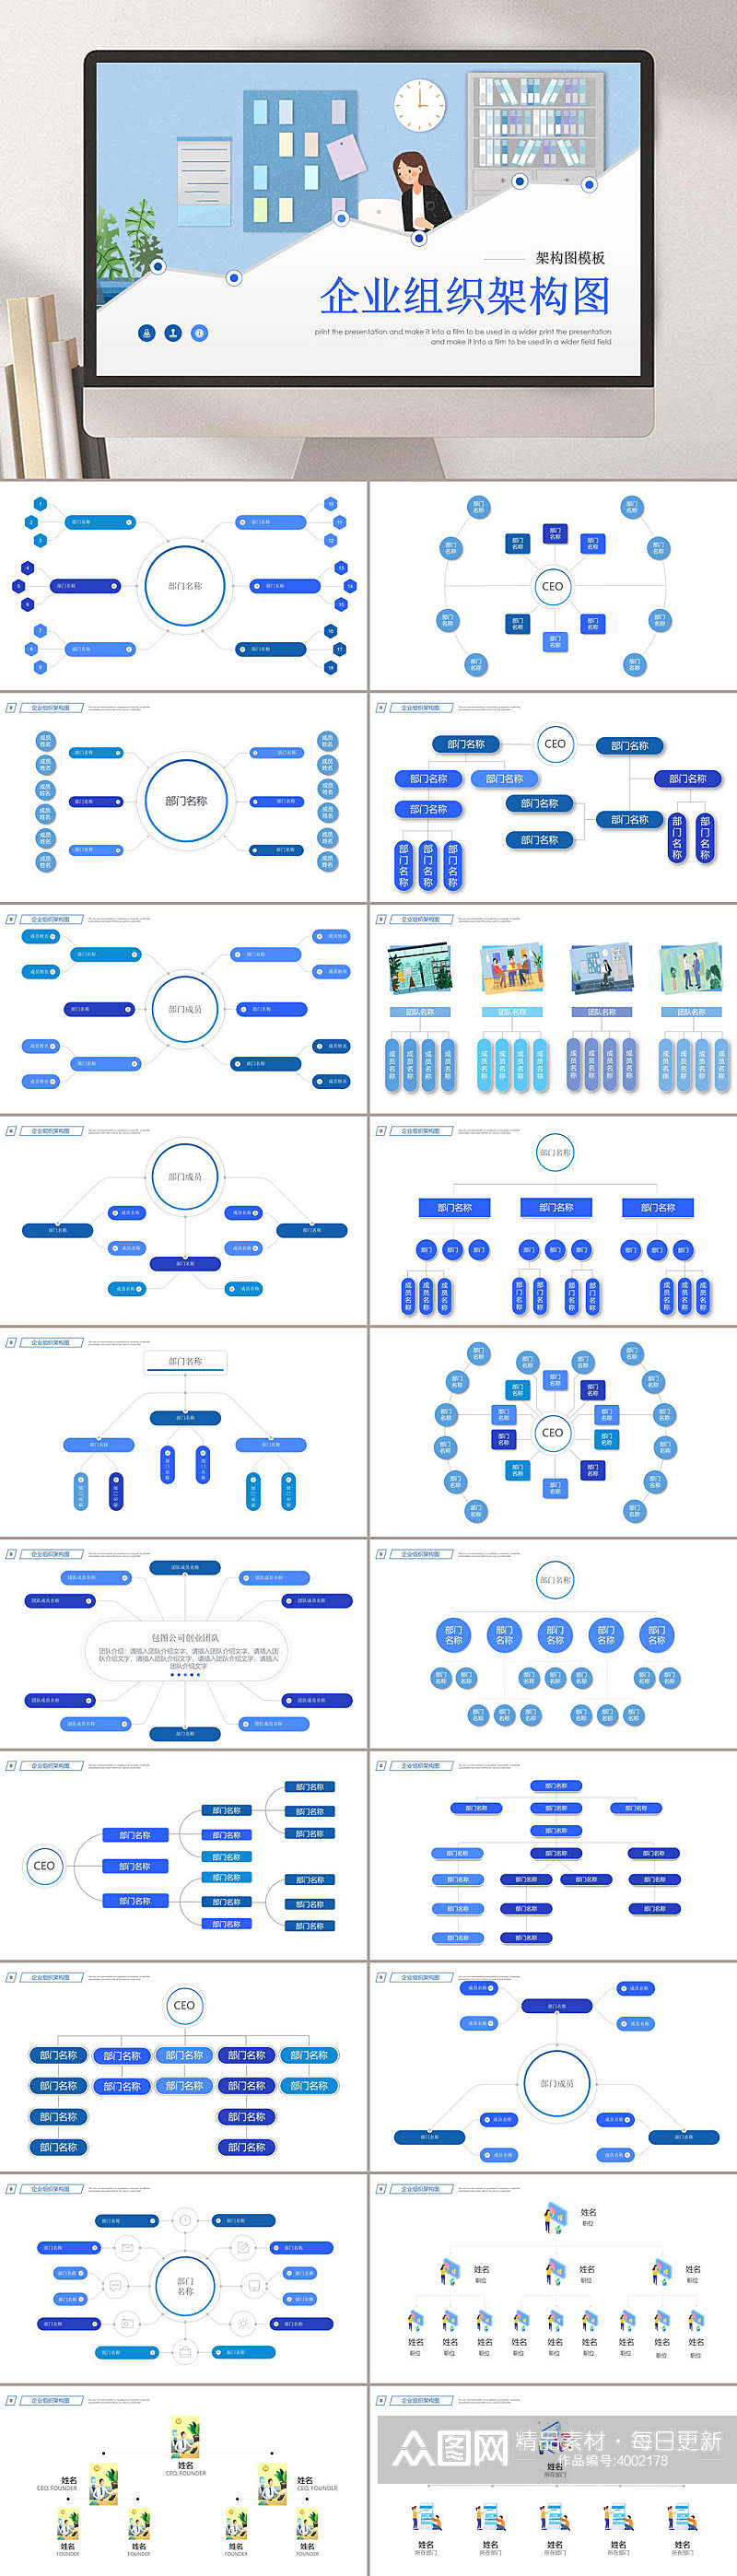 蓝色简约商务企业组织架构图图表PPT素材